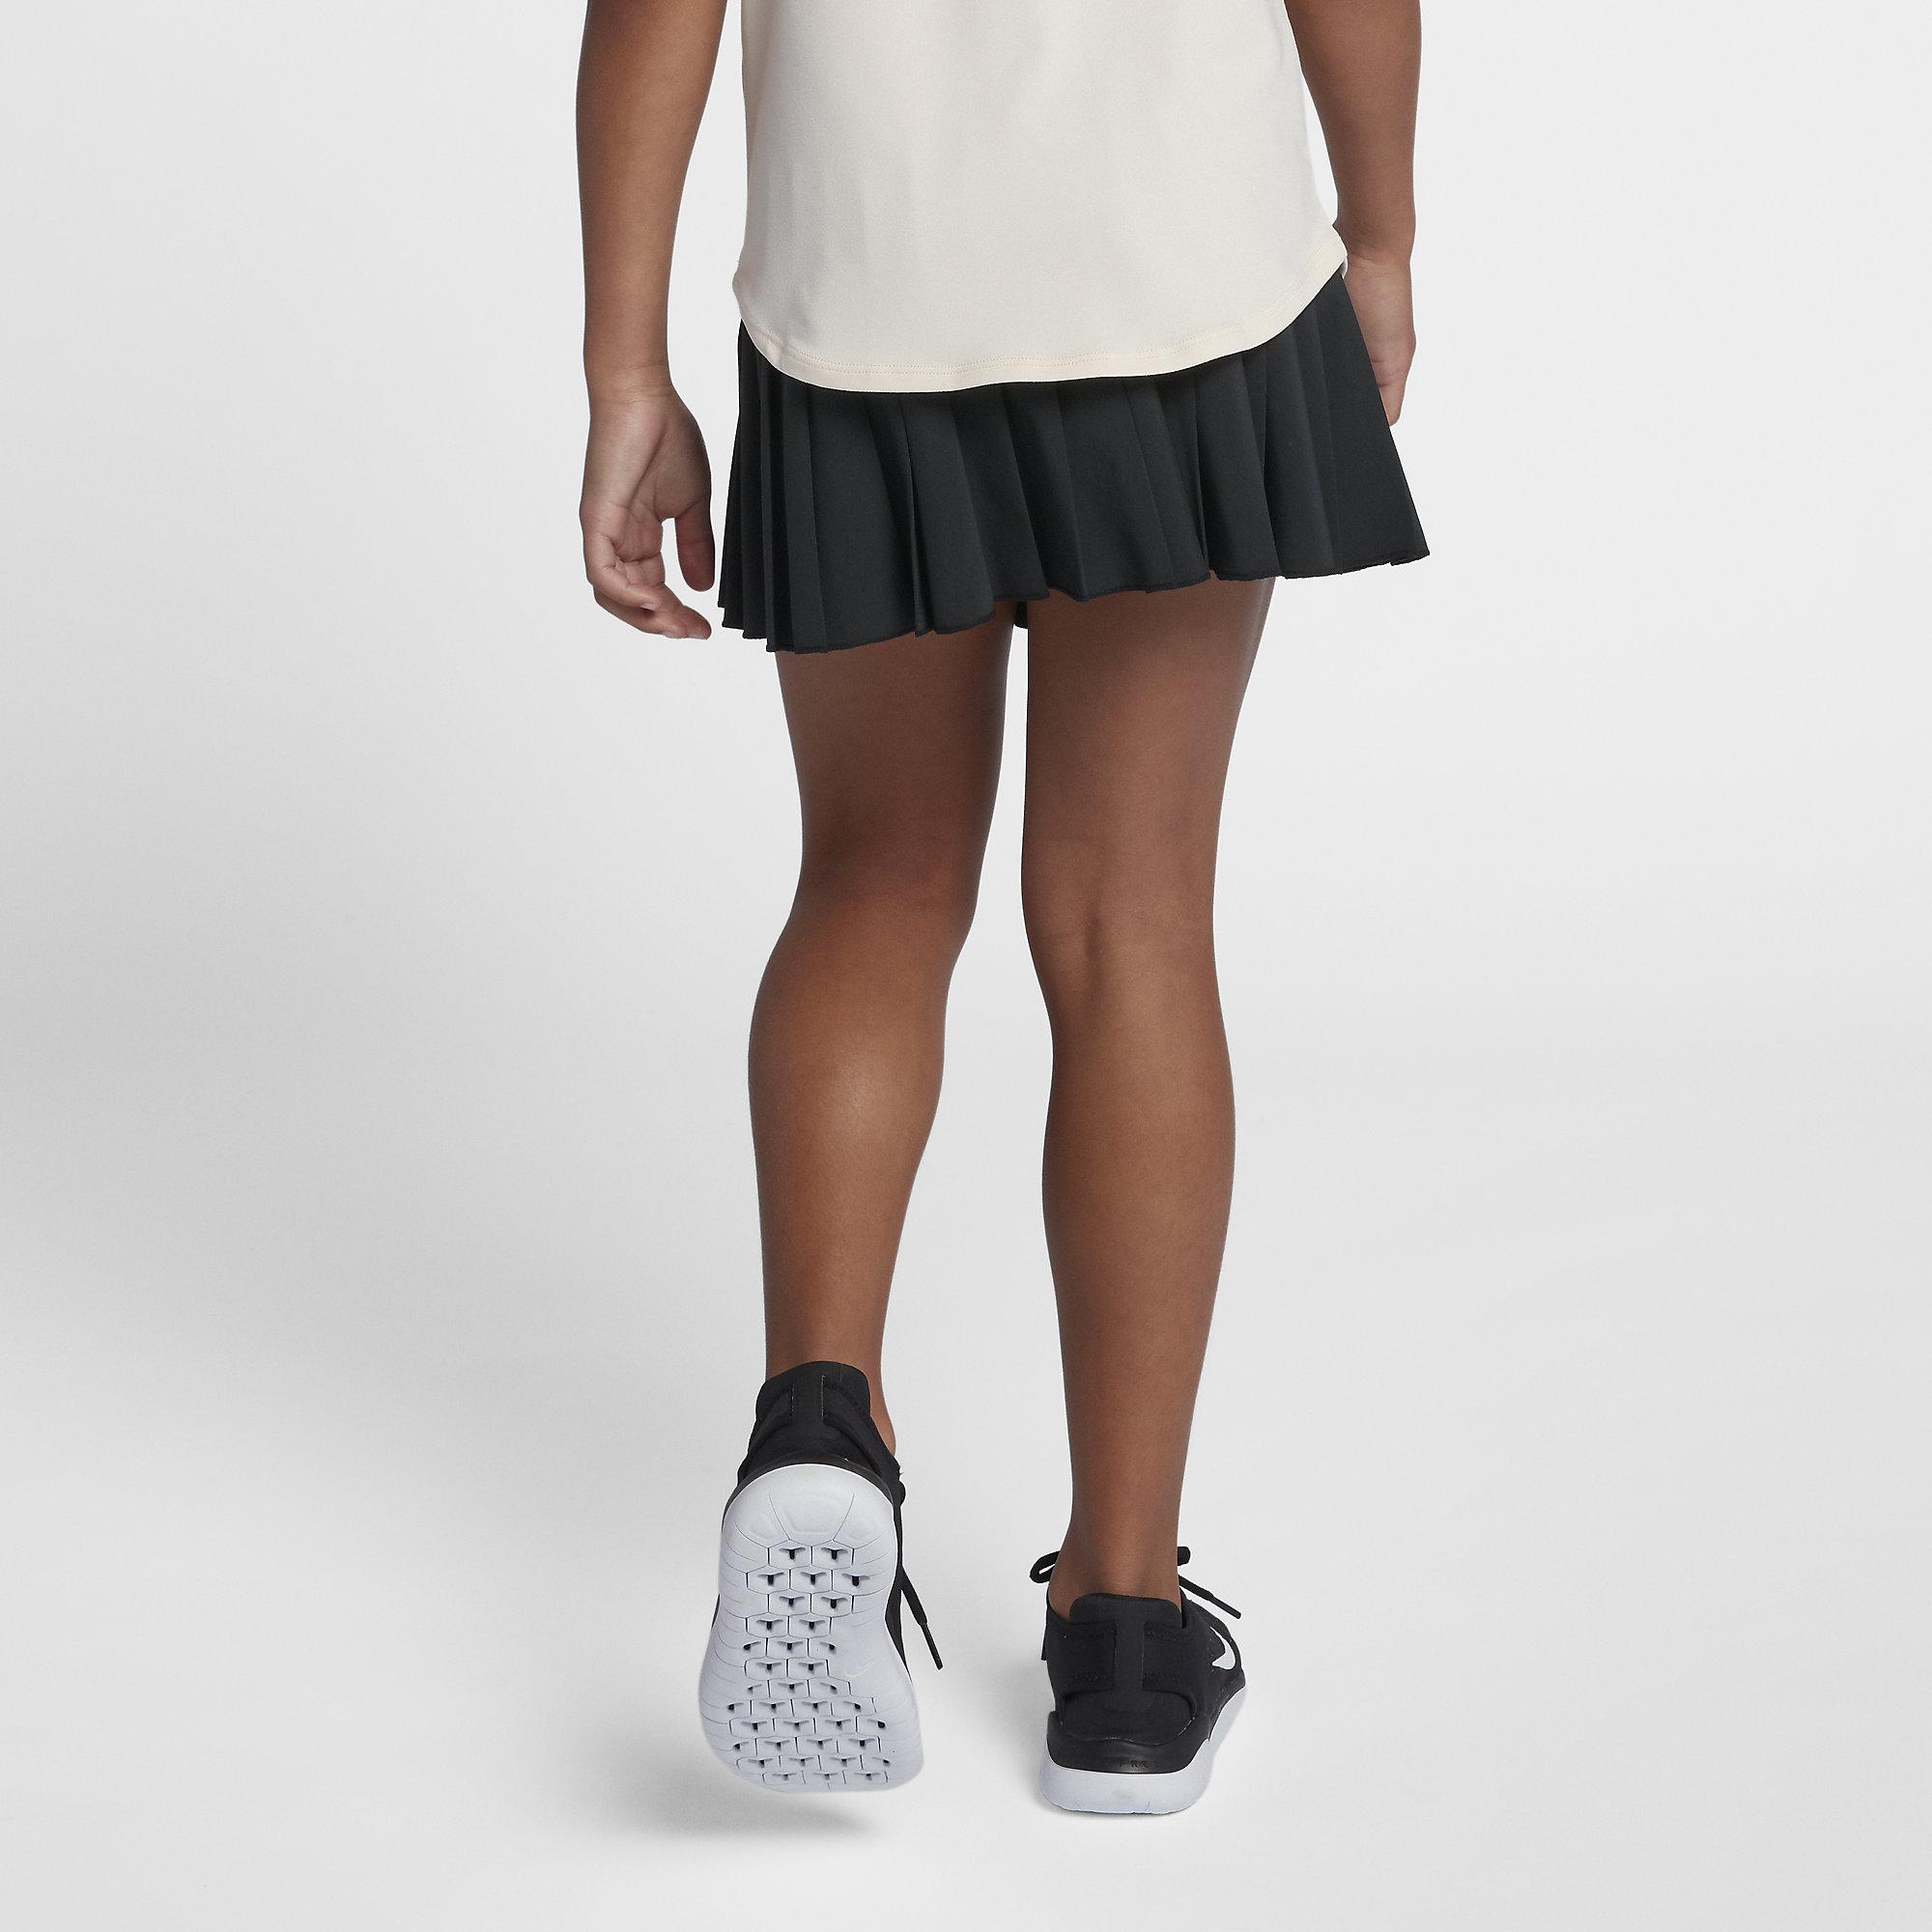 Теннисные юбки в школу. Юбка теннисная Nike Victory для девочек. Юбка найк для тенниса. Теннисные юбки в школу для девочек. Школьная юбка теннисная для девочек.